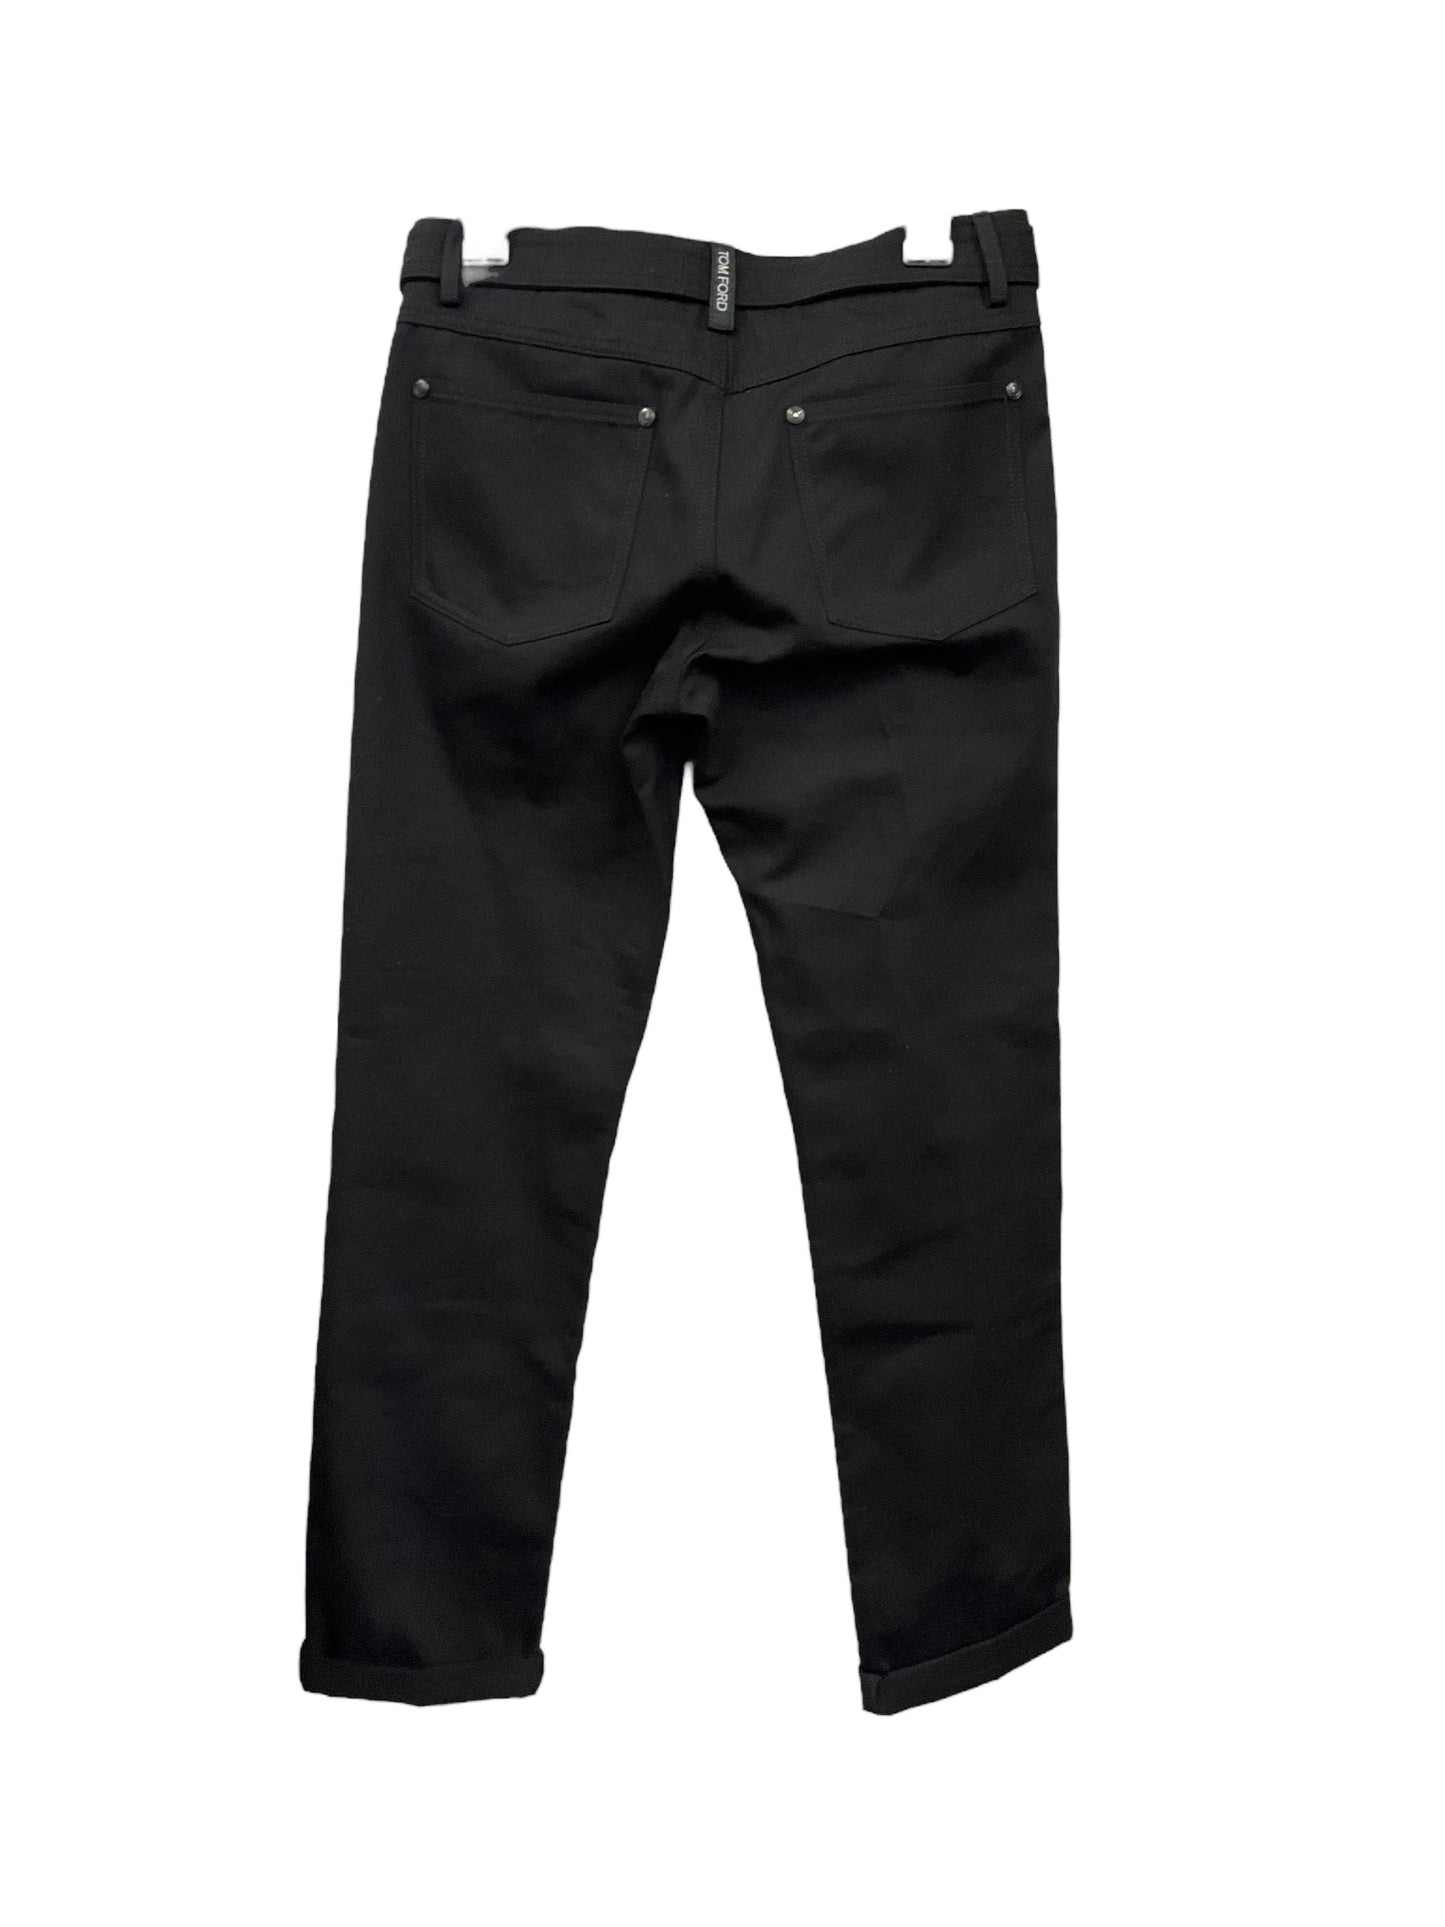 Black Pants Designer Tom Ford, Size 4